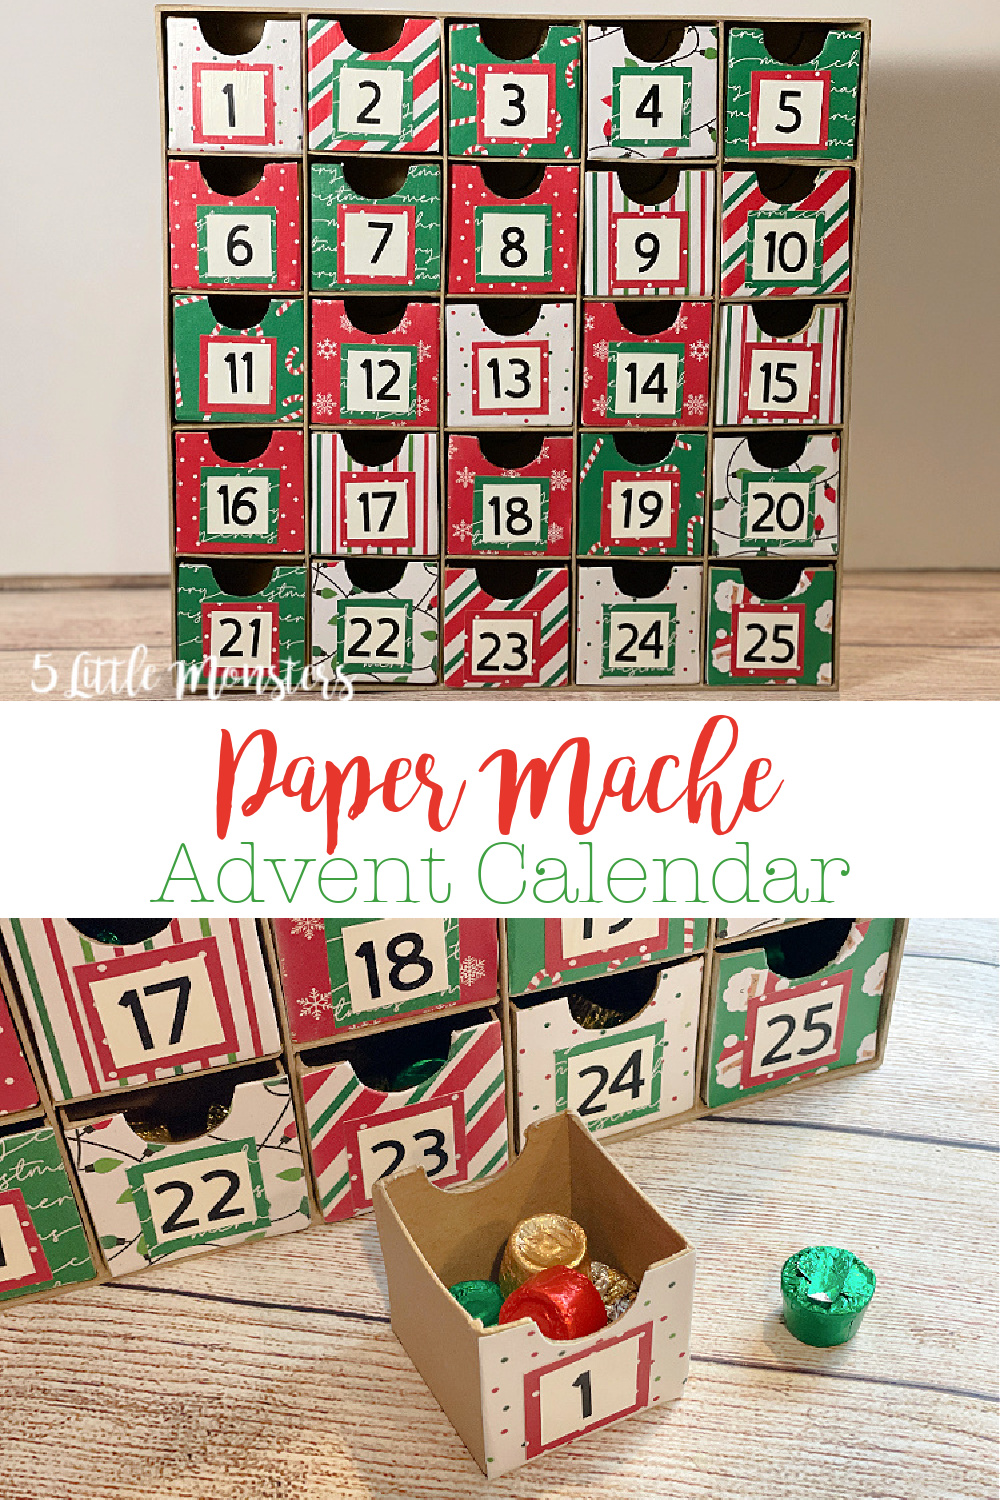 5 Little Monsters Paper Mache Advent Calendar